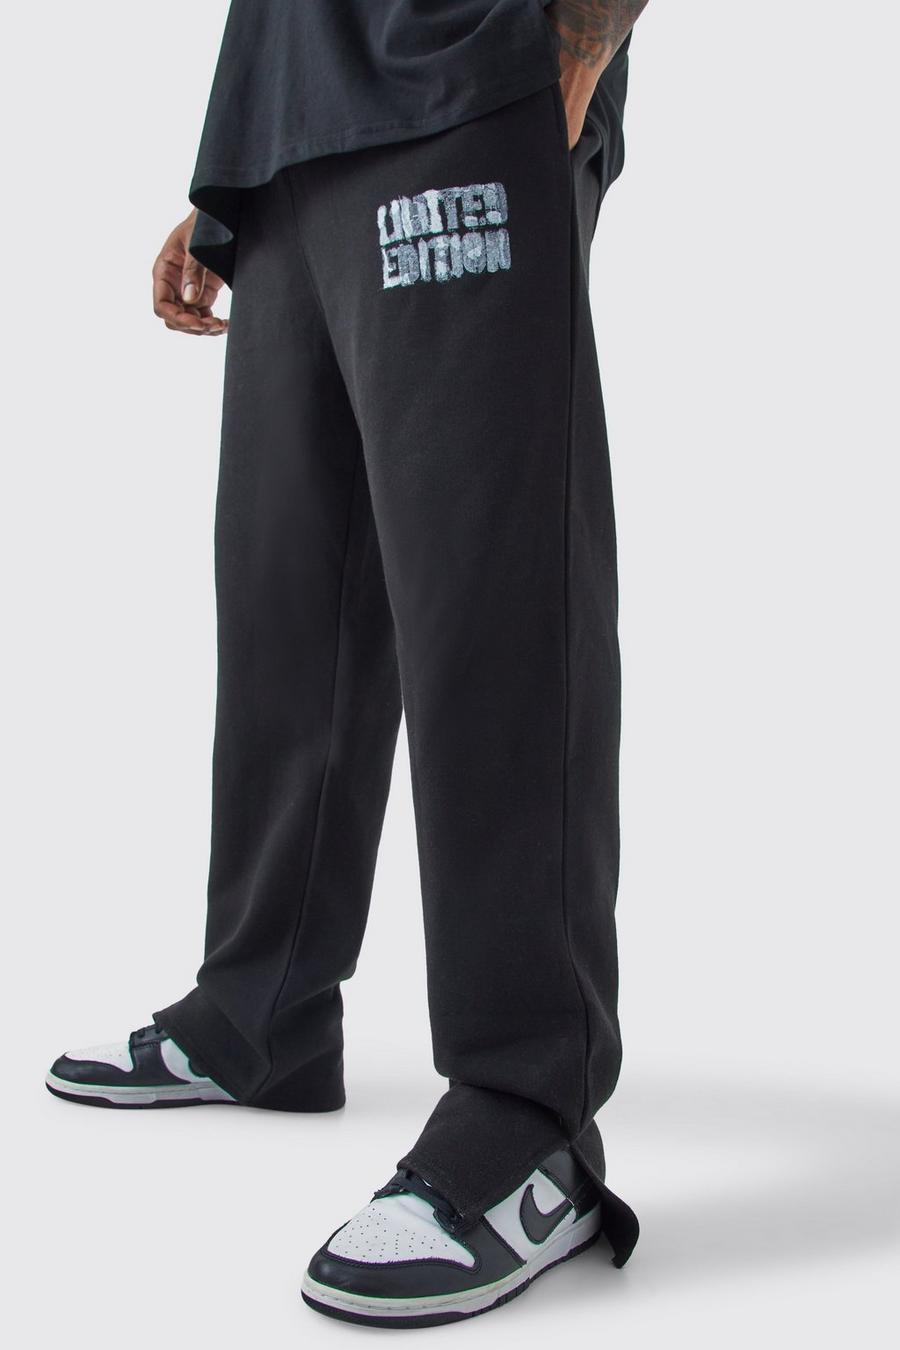 Pantaloni tuta Plus Size neri Limited Edition con spacco sul fondo, Black